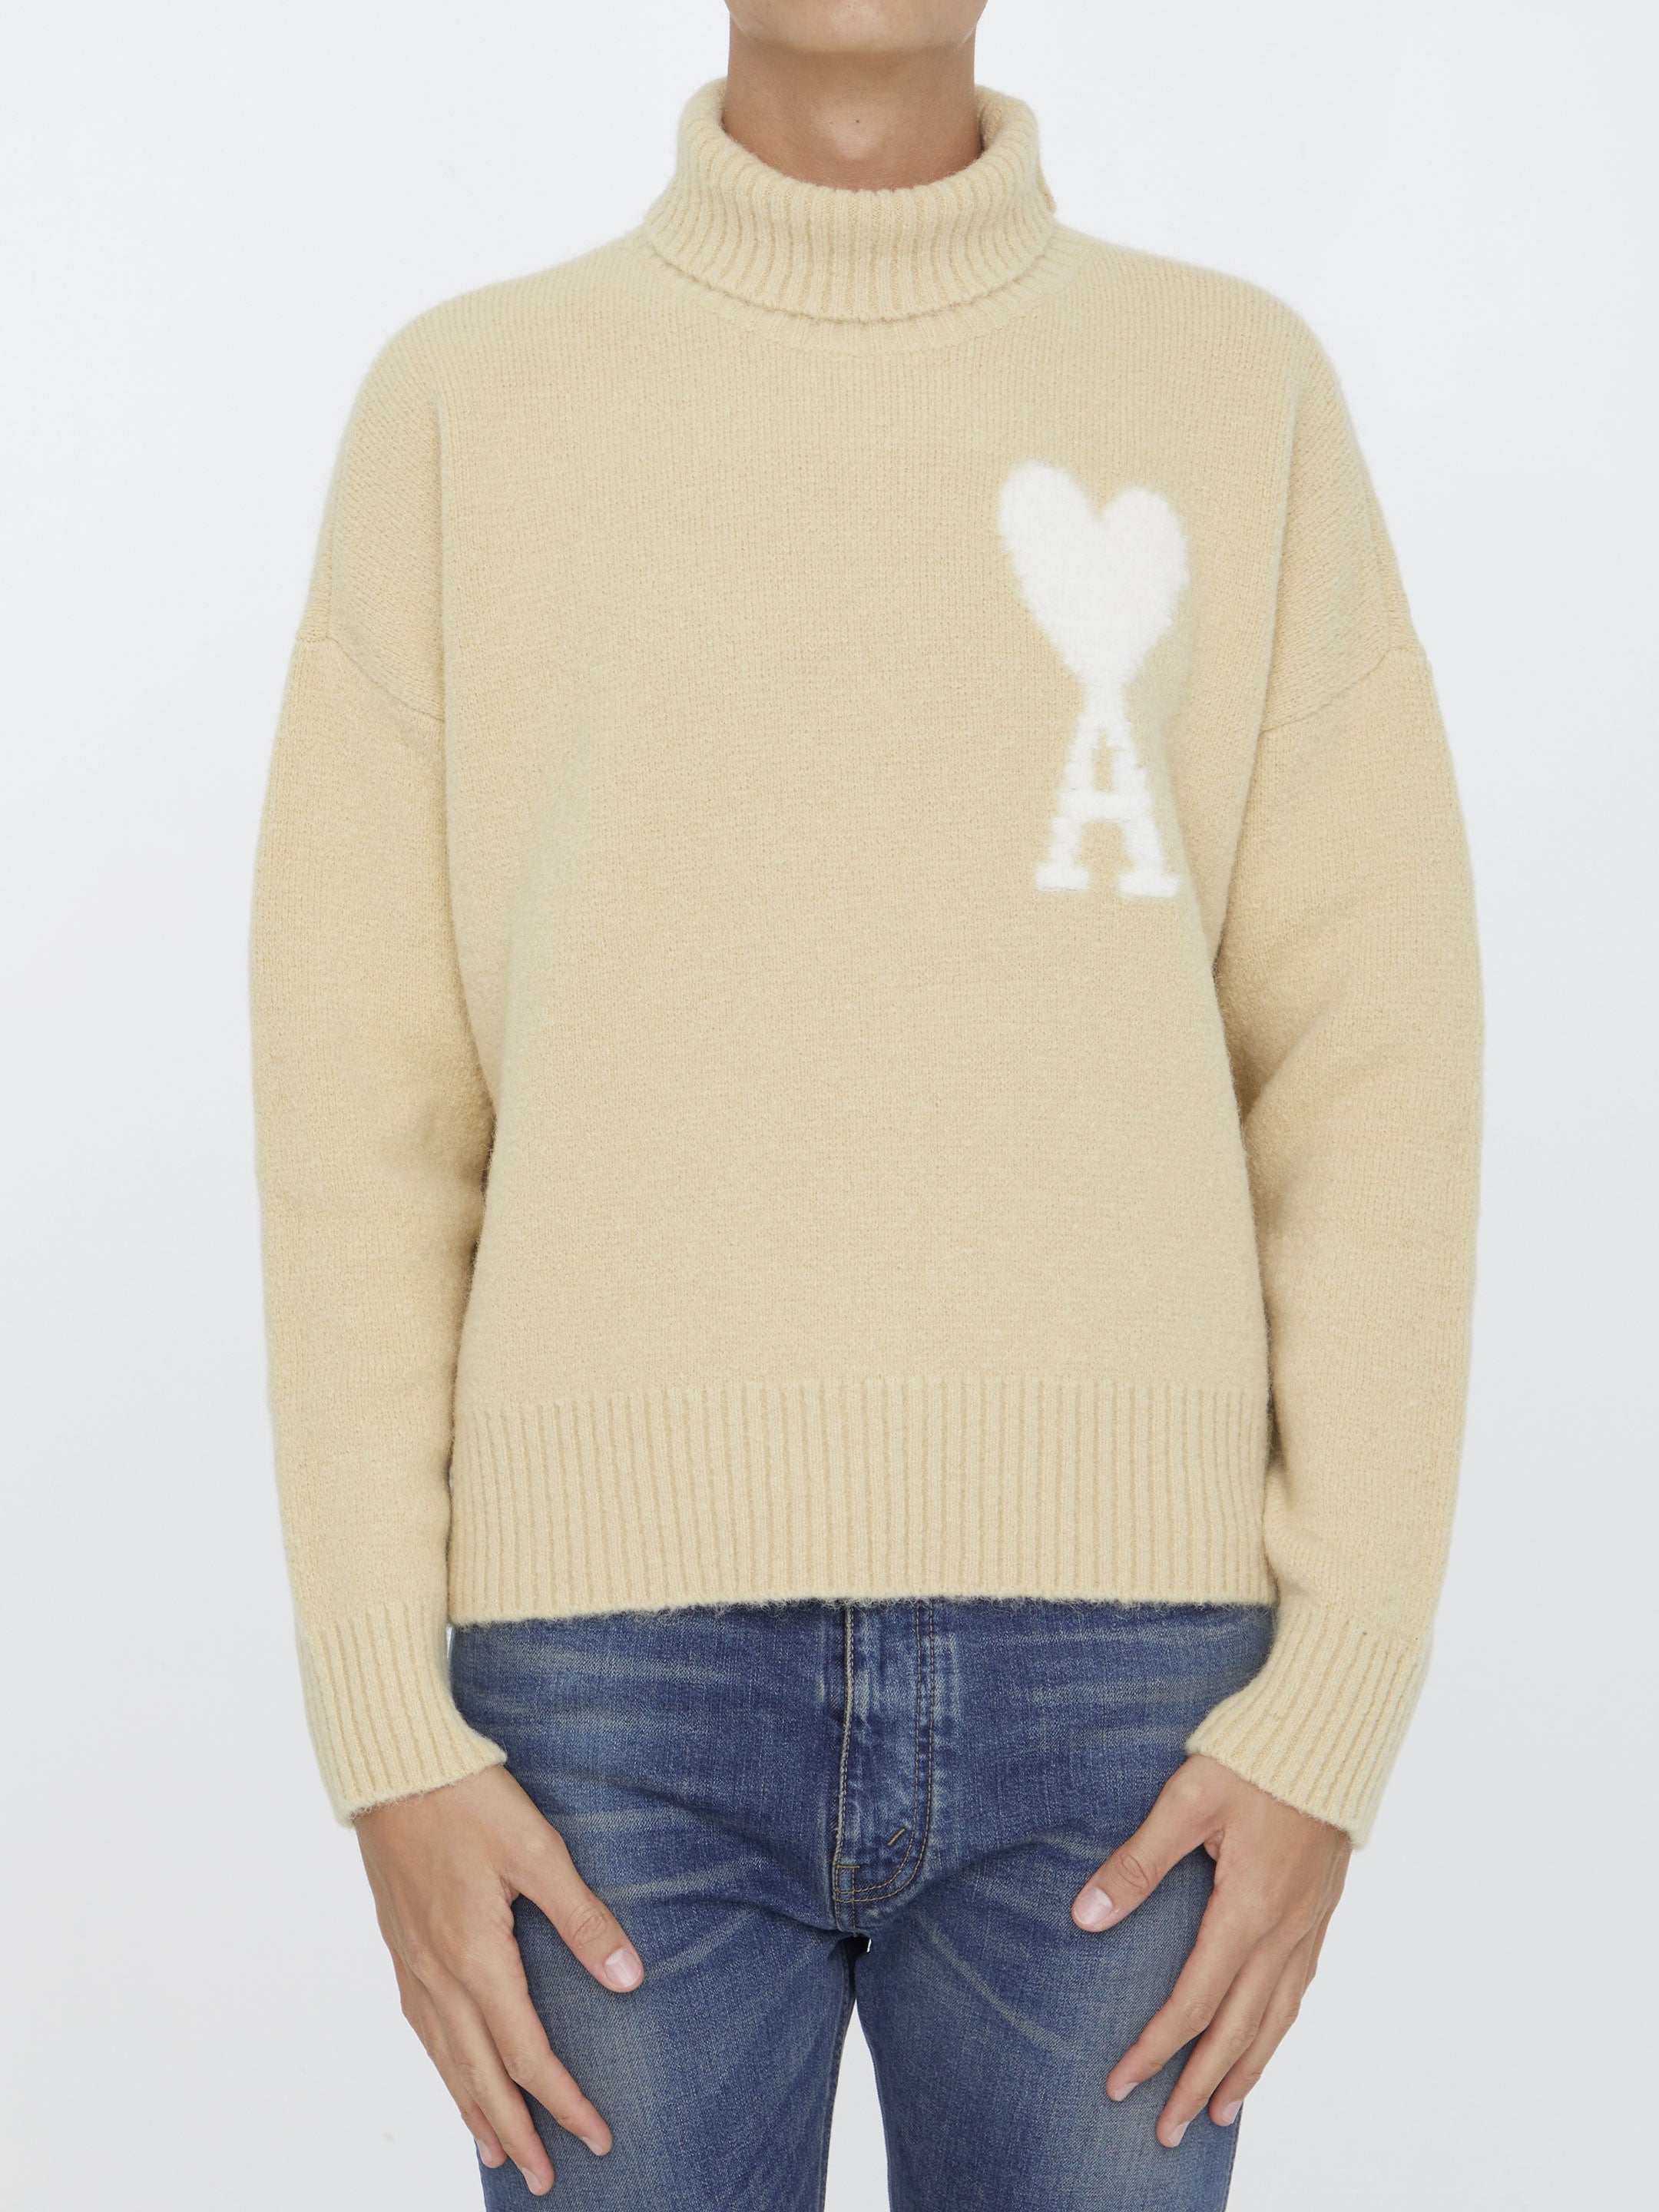 AMI-PARIS-OUTLET-SALE-Ami-De-Coeur-sweater-Strick-XL-CREAM-ARCHIVE-COLLECTION.jpg